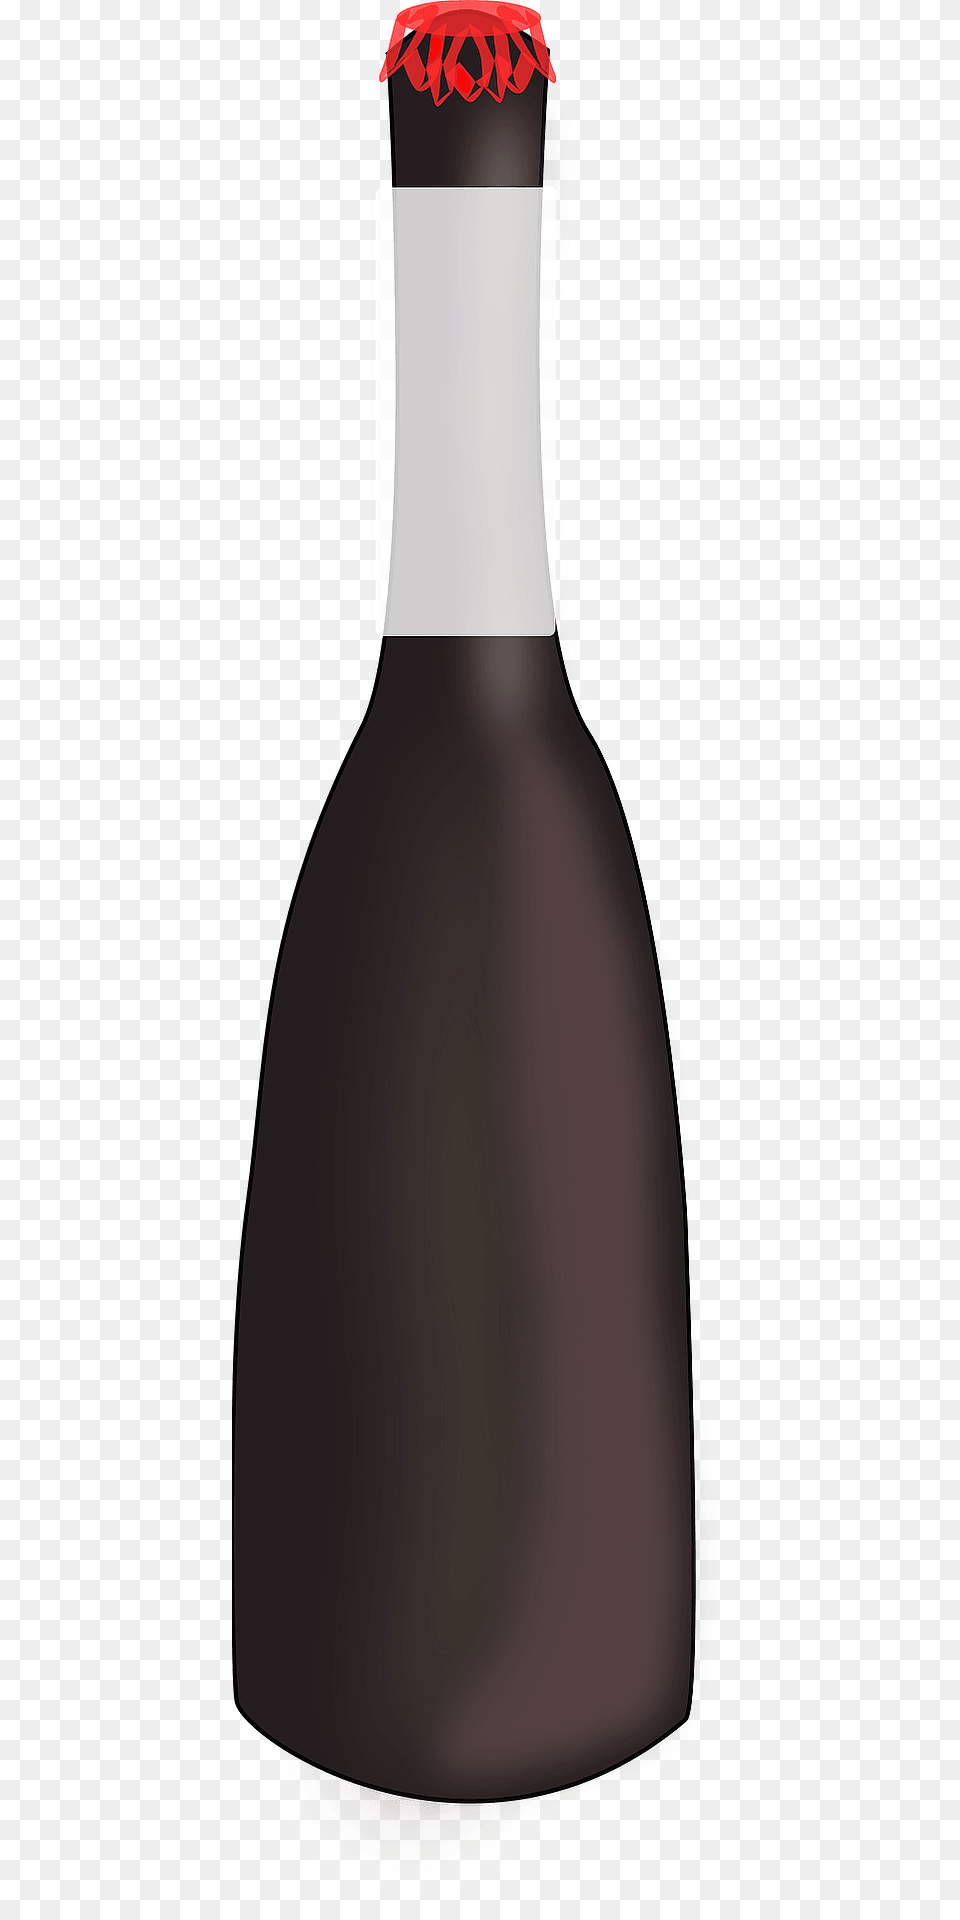 Beer Bottle Clipart, Alcohol, Beverage, Liquor, Wine Png Image